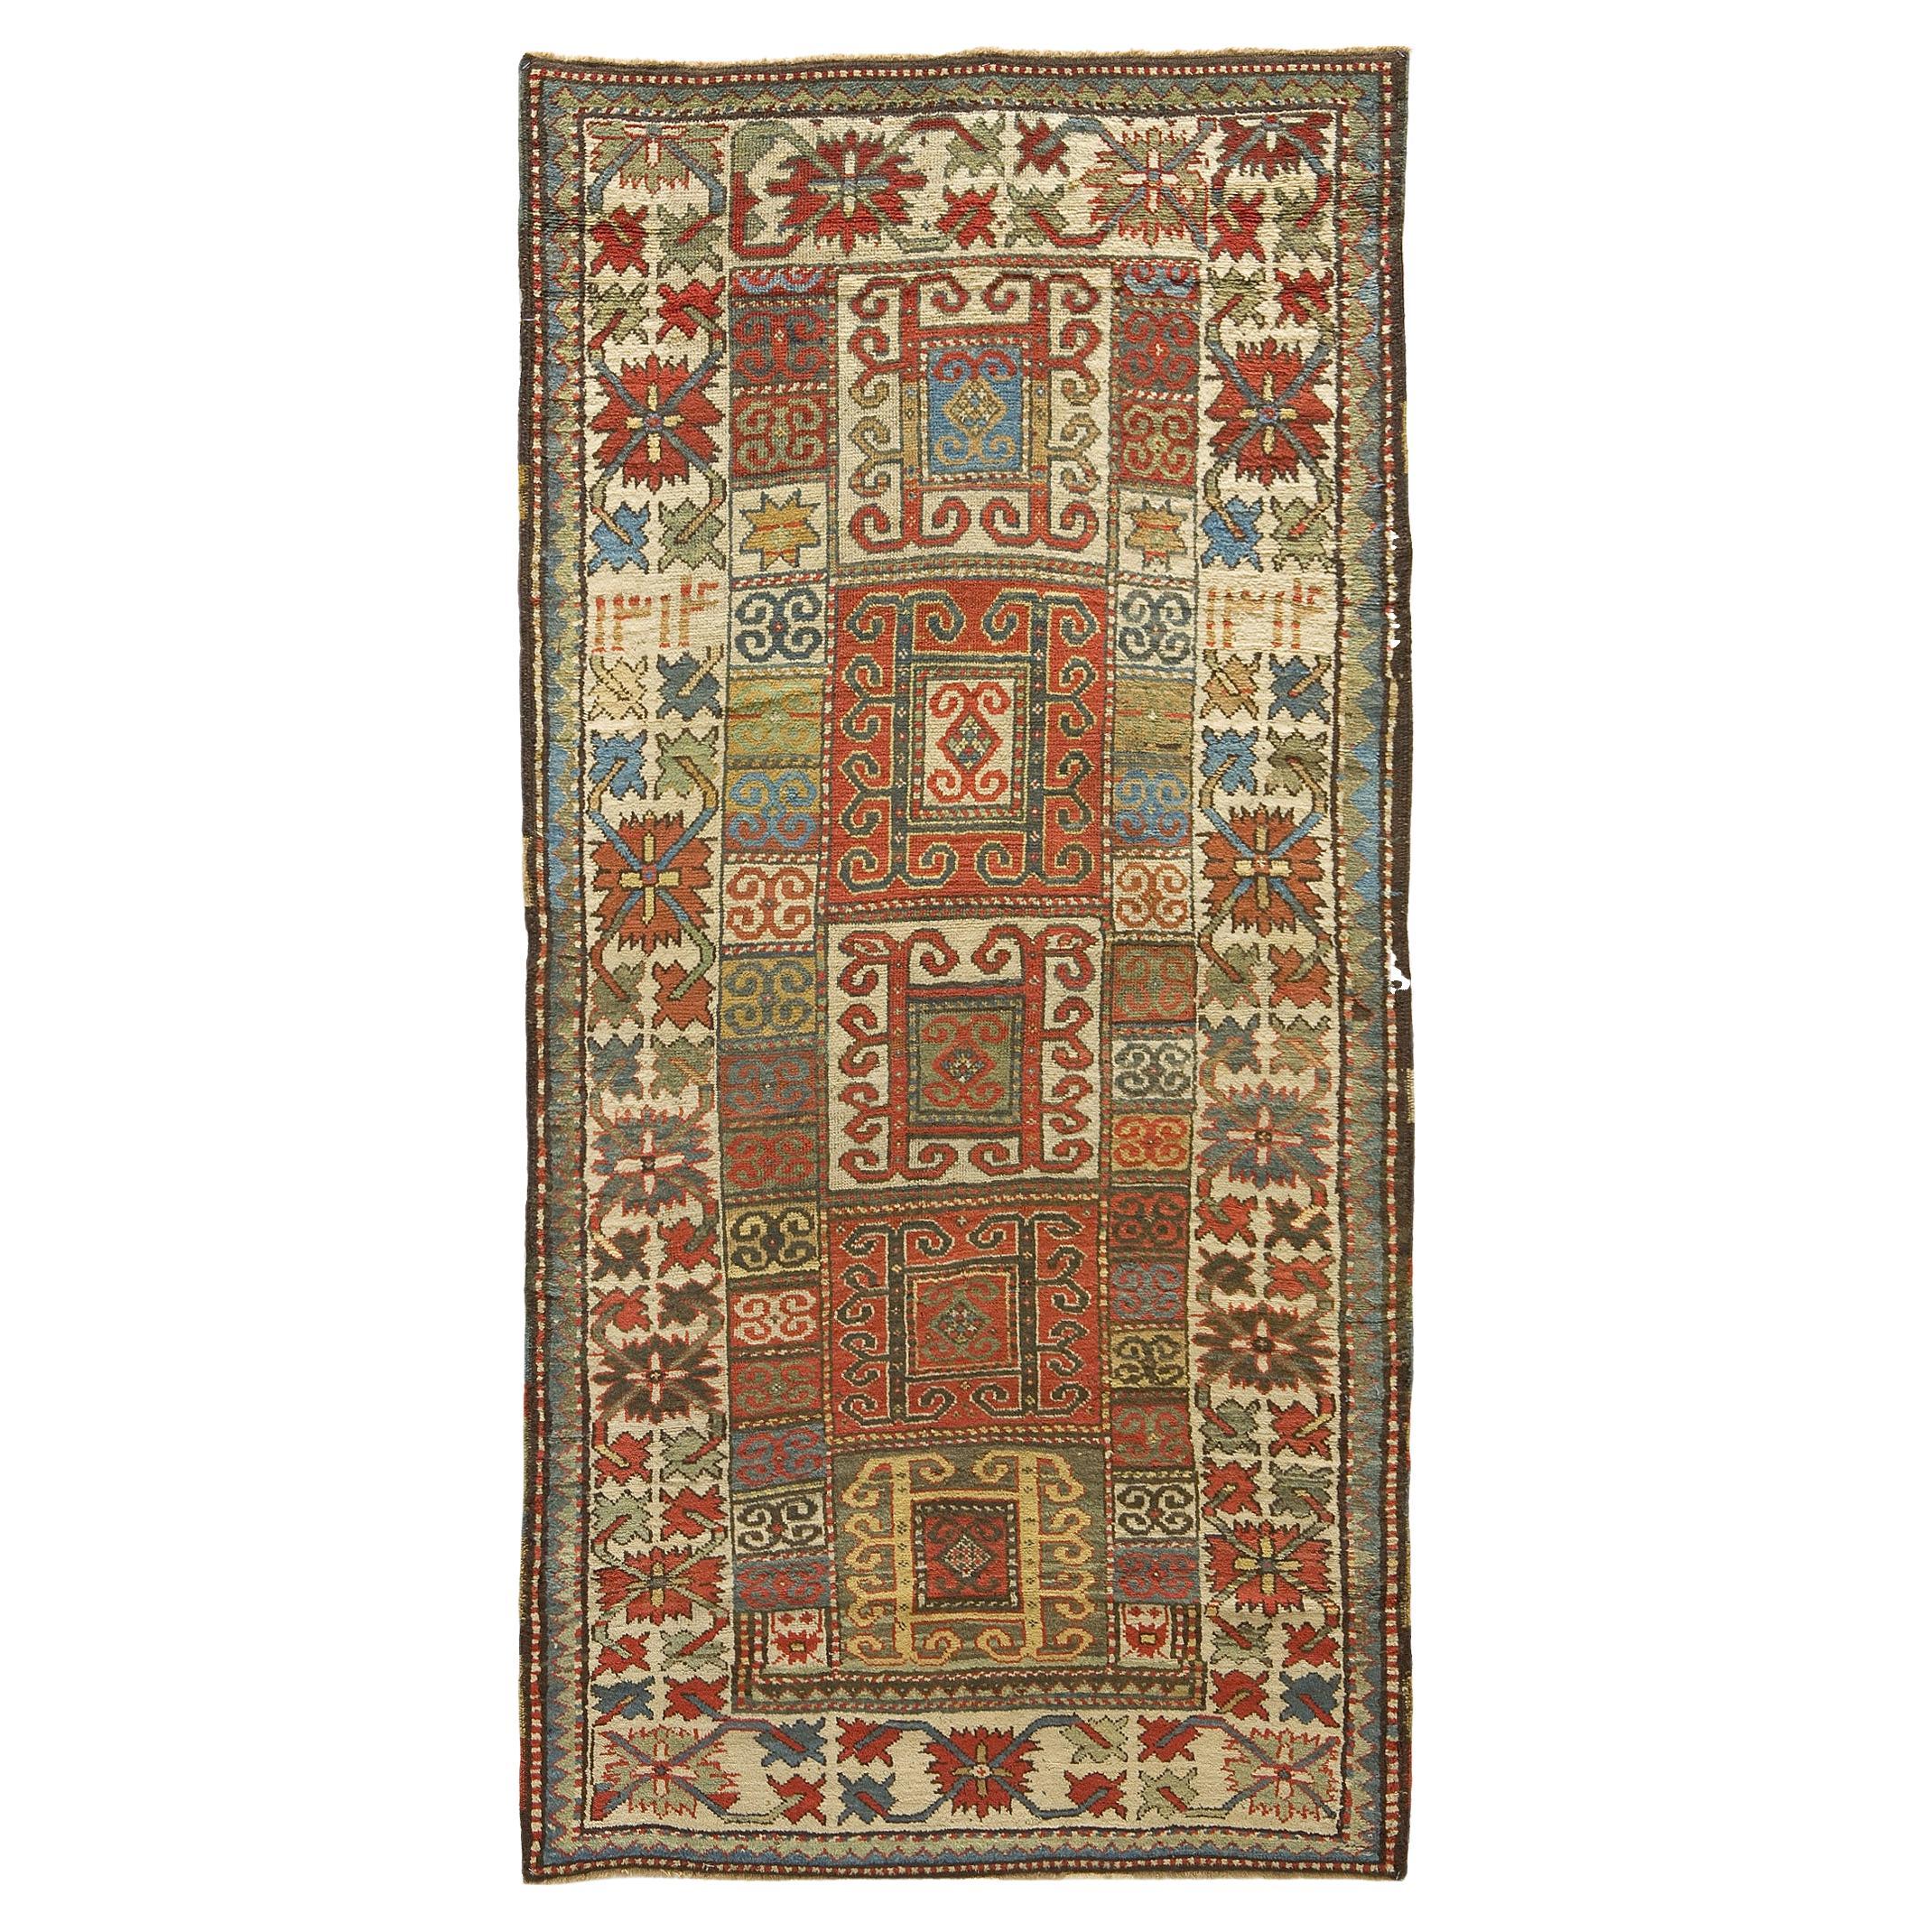 Antique tapis Kazak de la fin du 19ème siècle, daté de 1894